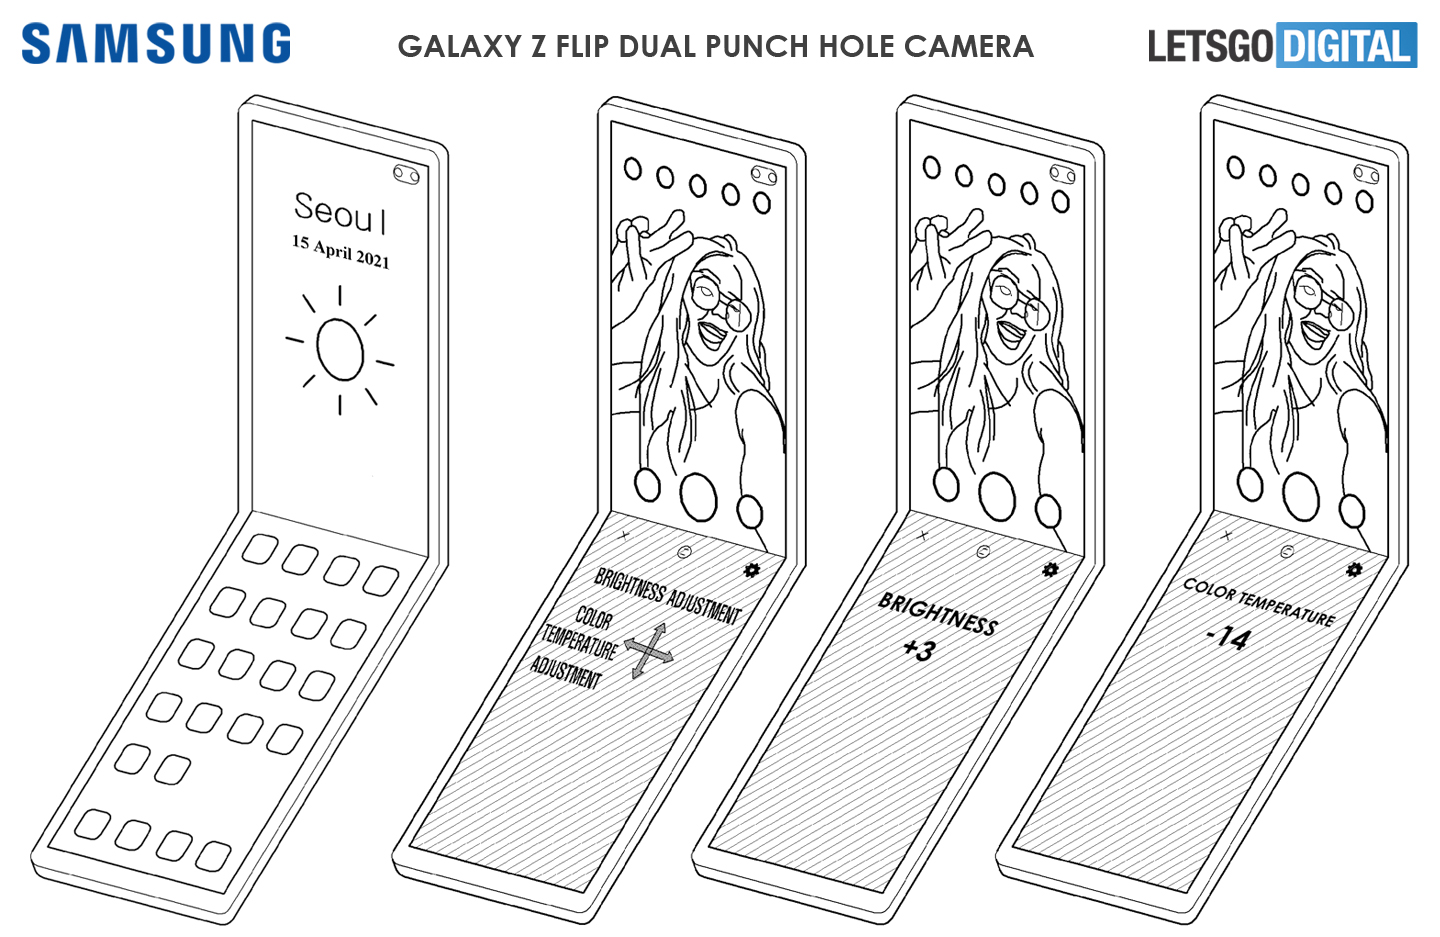 Galaxy Z Flip kamera lubang ganda